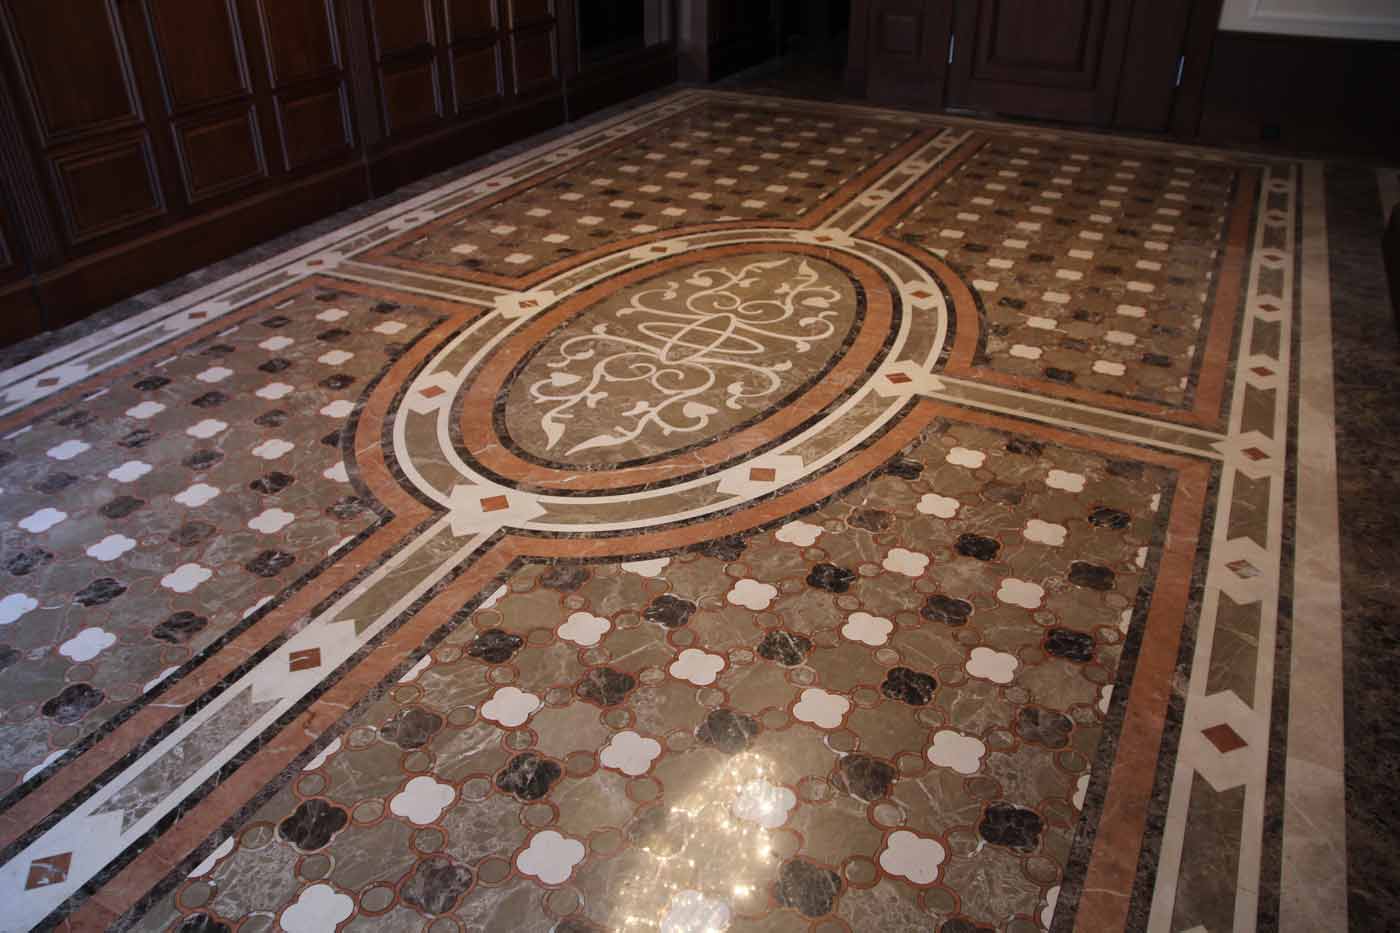 Spanish limestone inlaid floor